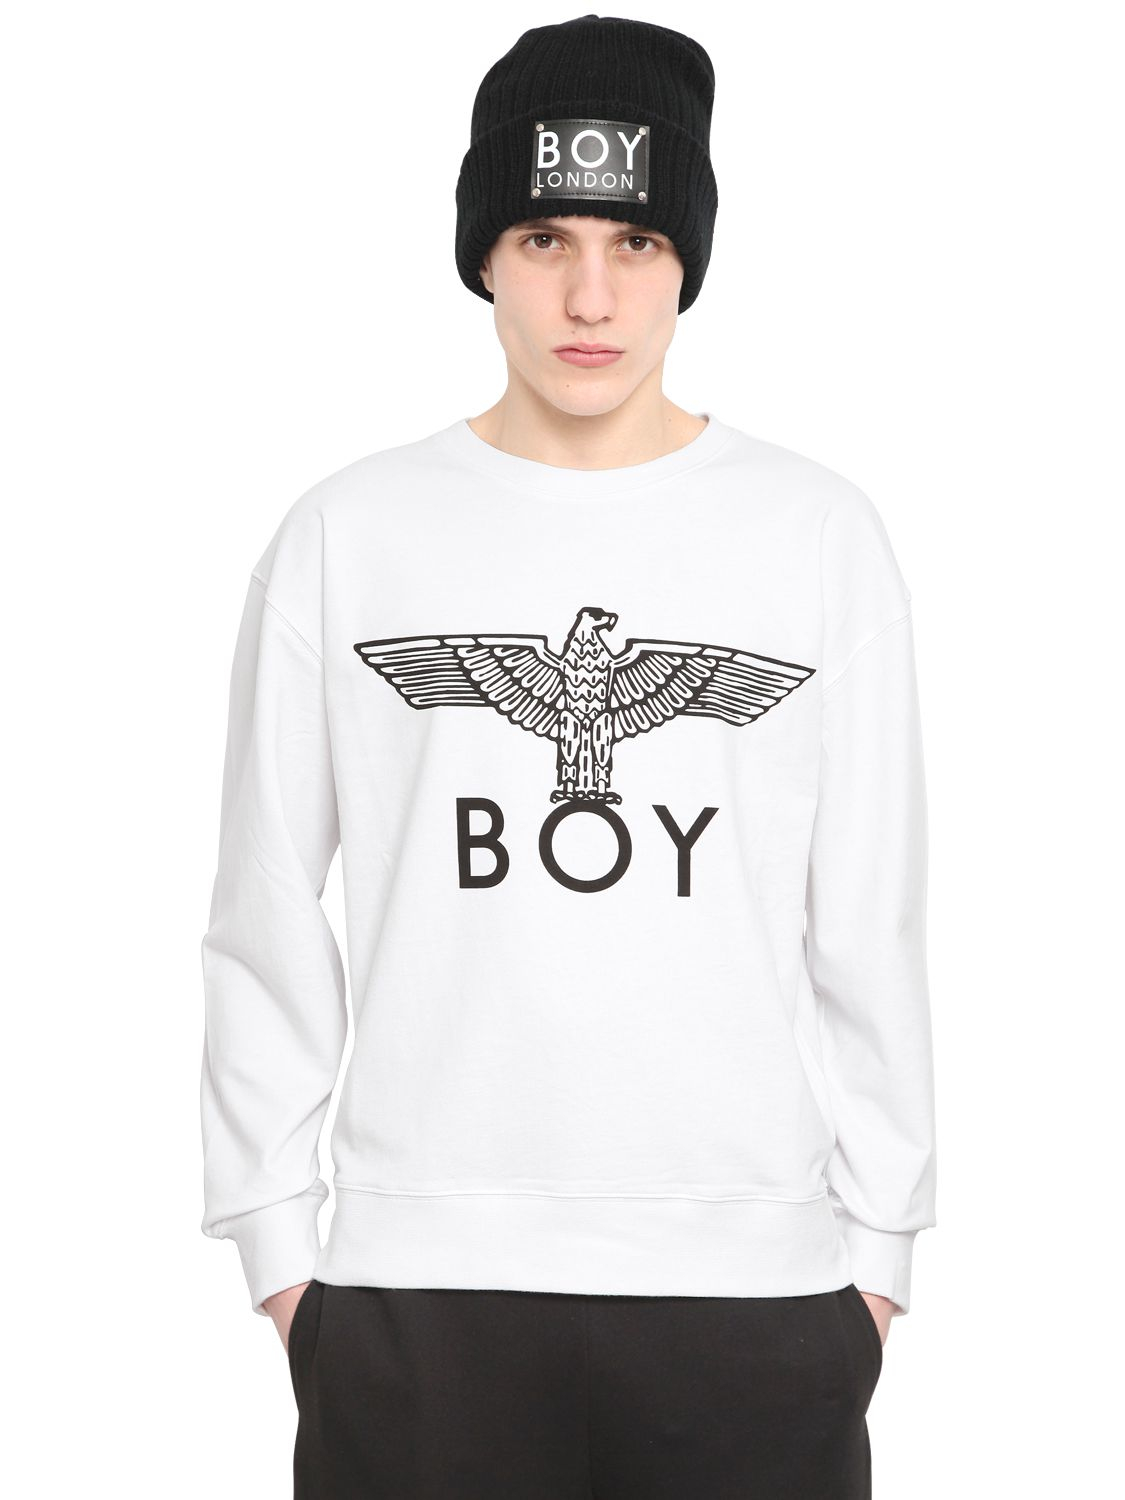 BOY London Boy Eagle Print Fleece Sweatshirt in White/Black (Black) for Men  - Lyst